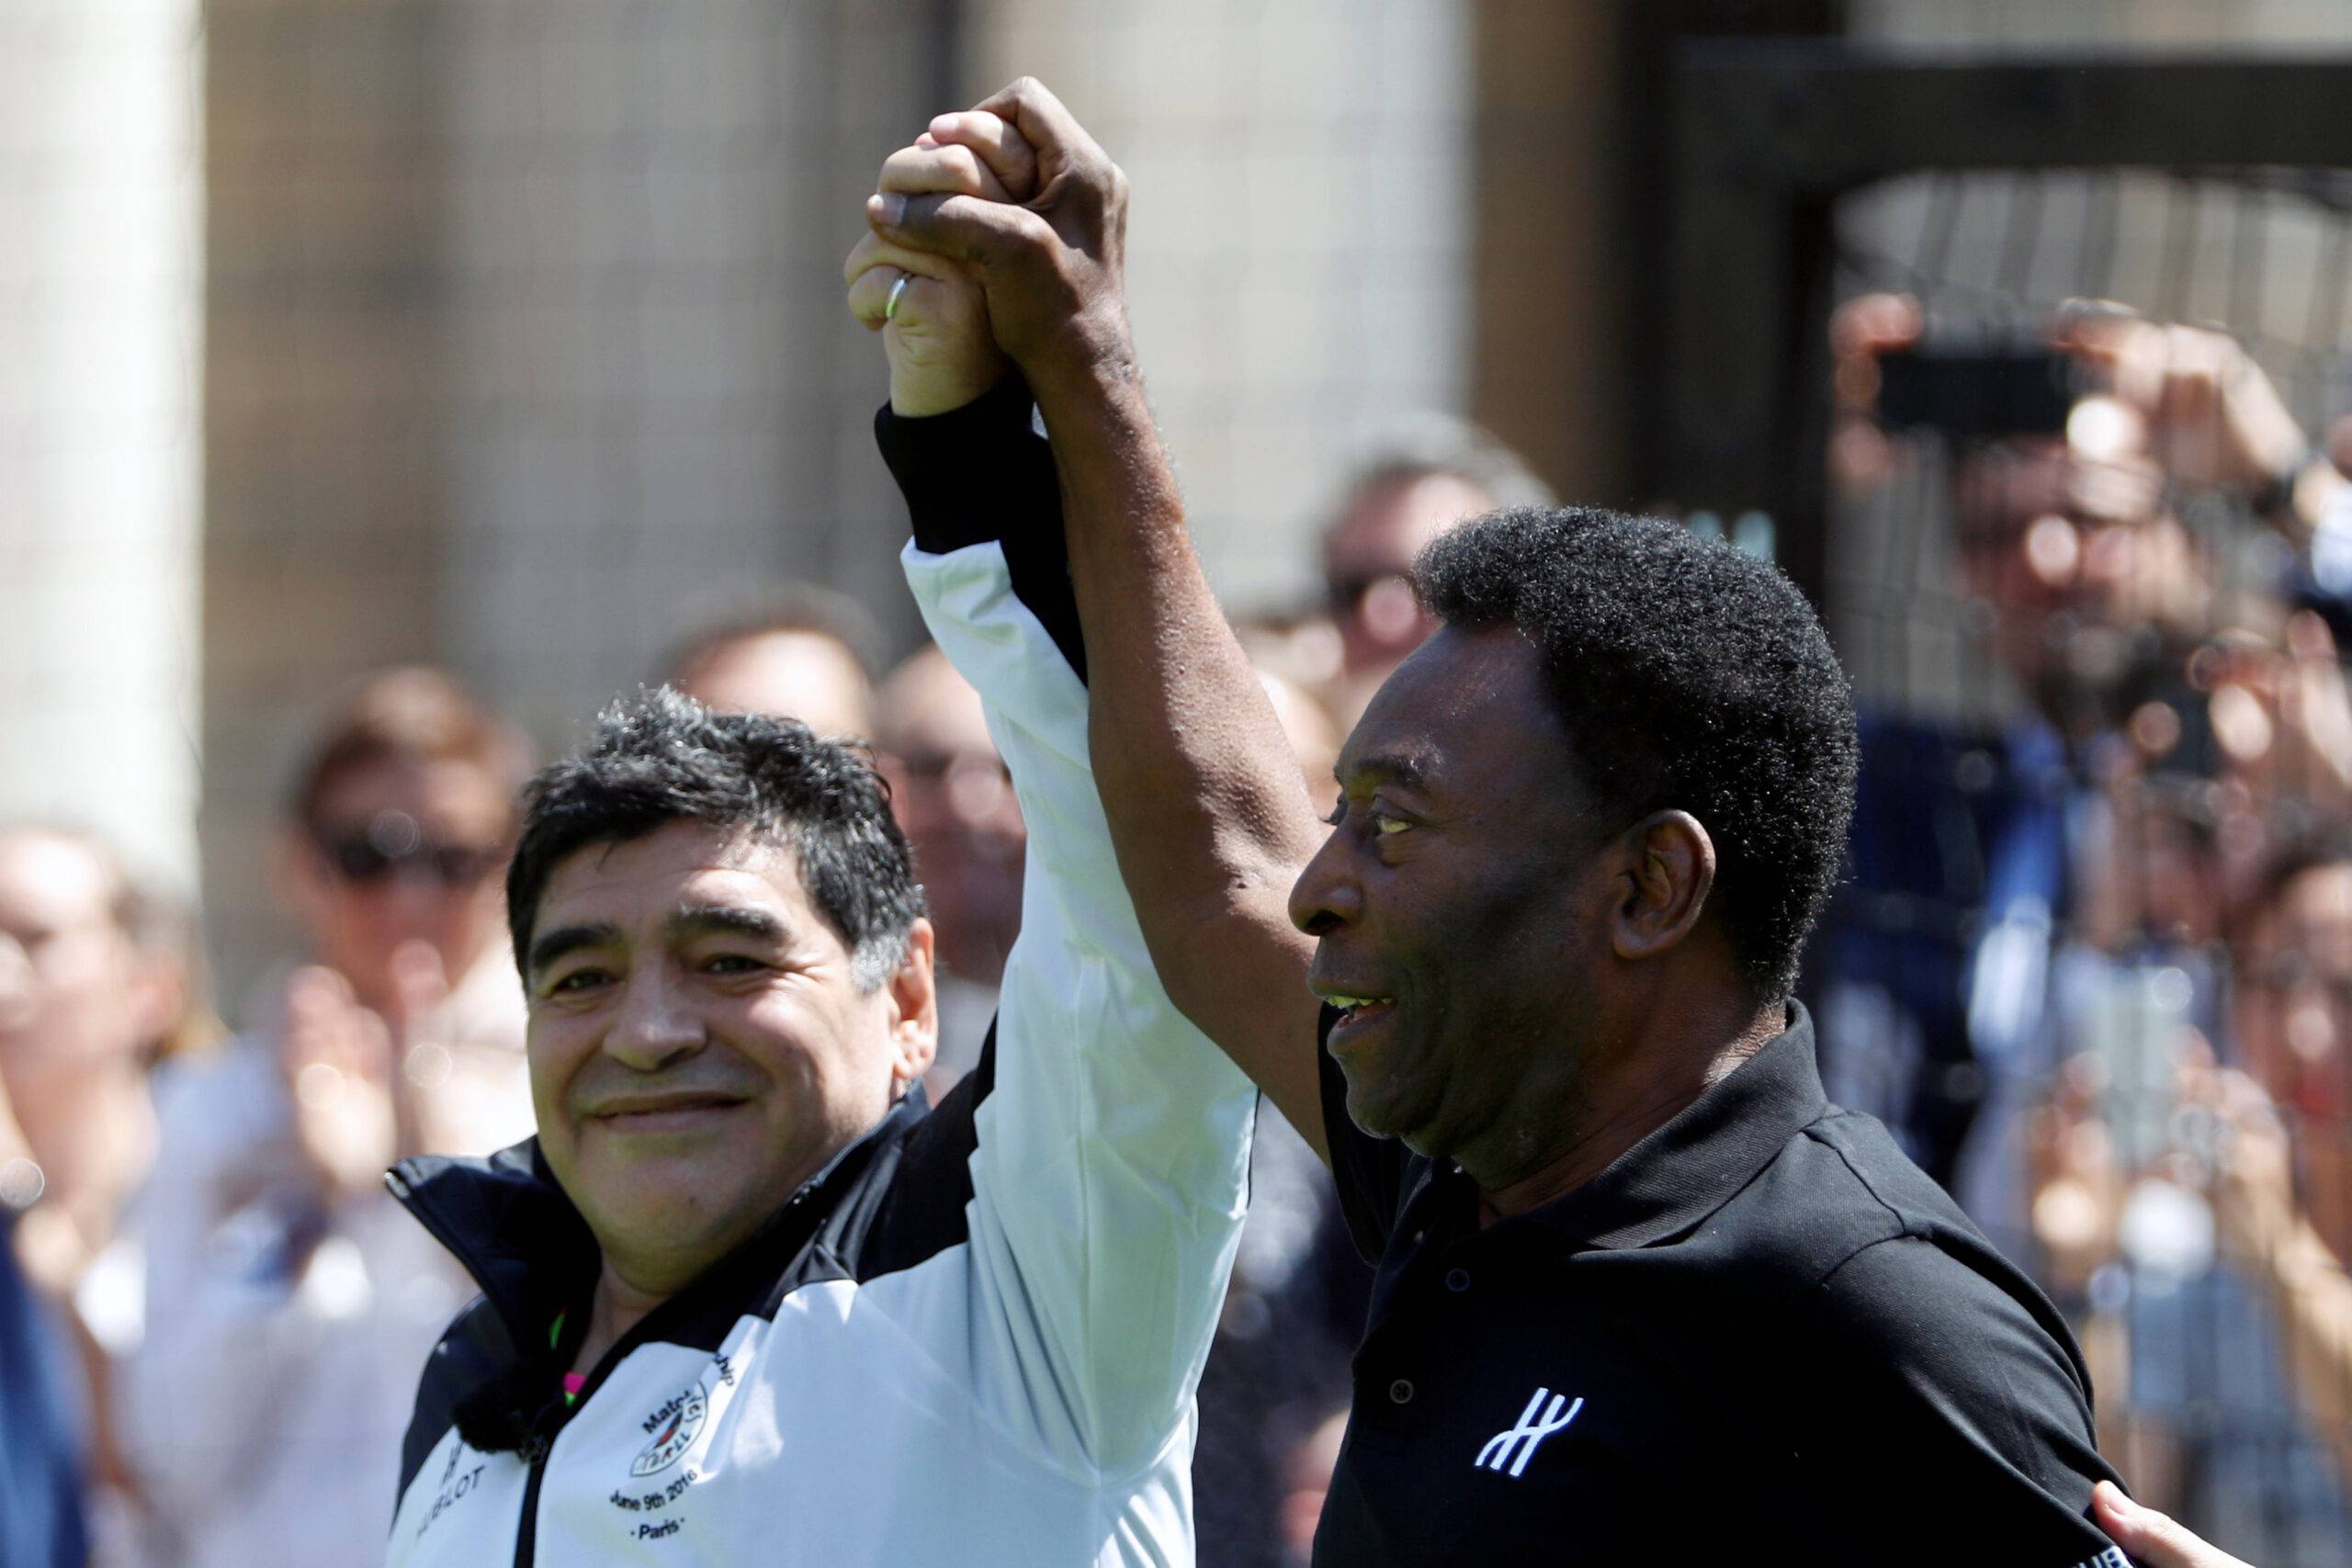 Diego Maradona and Pele share an embrace